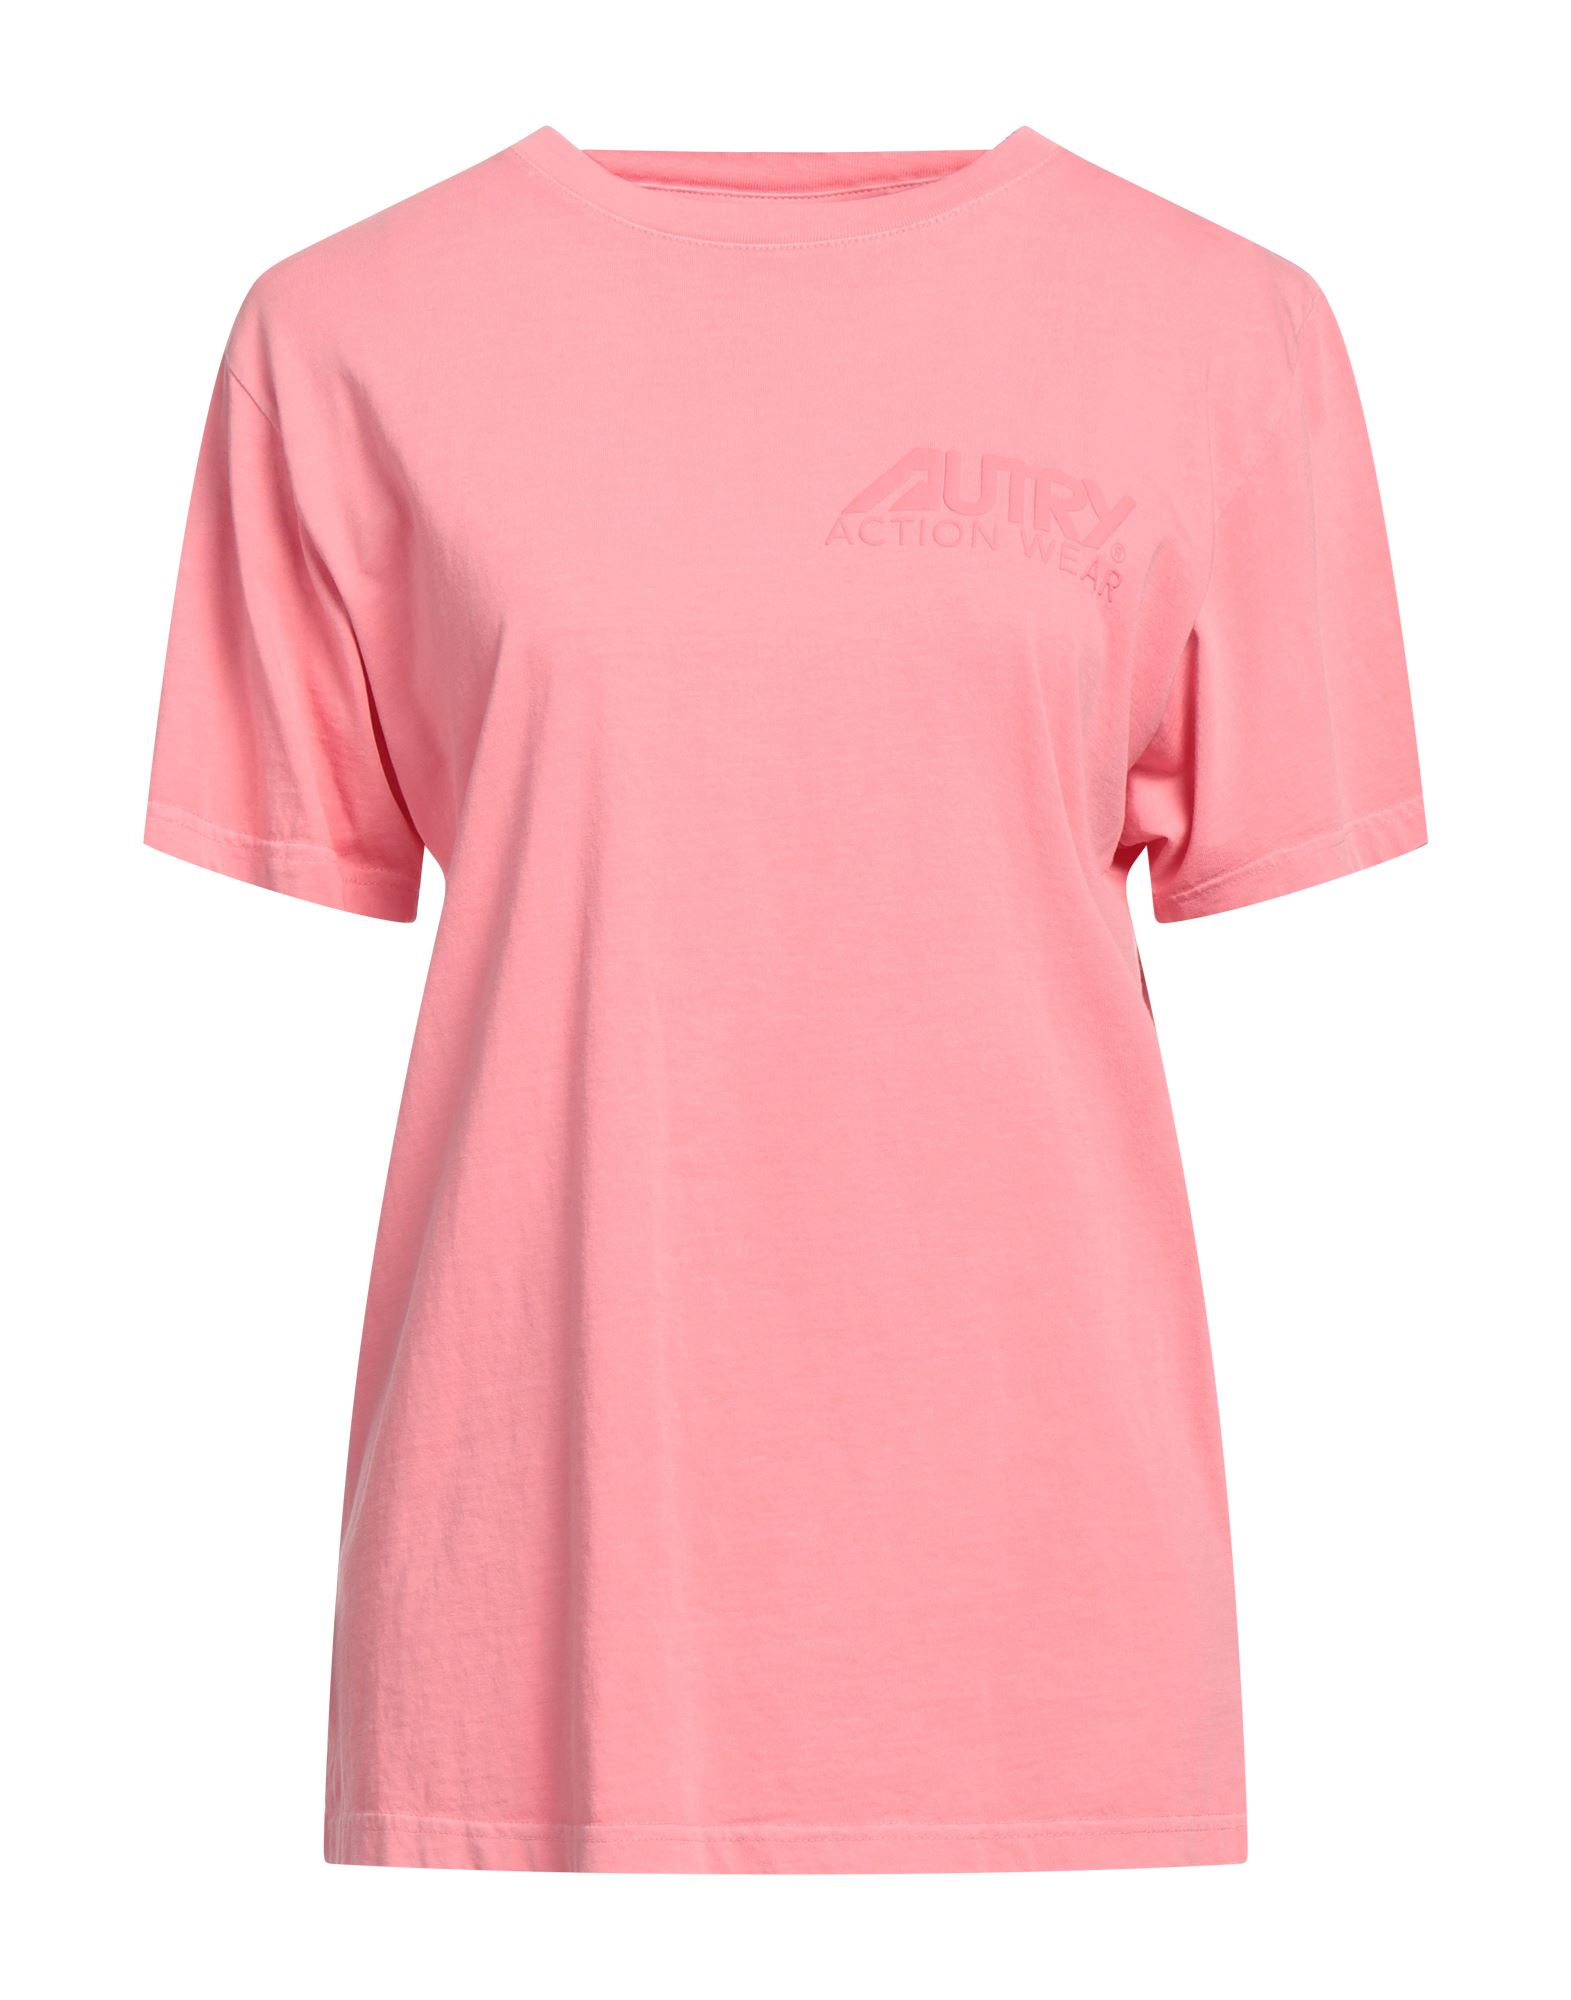 Shop Autry Woman T-shirt Pink Size M Cotton